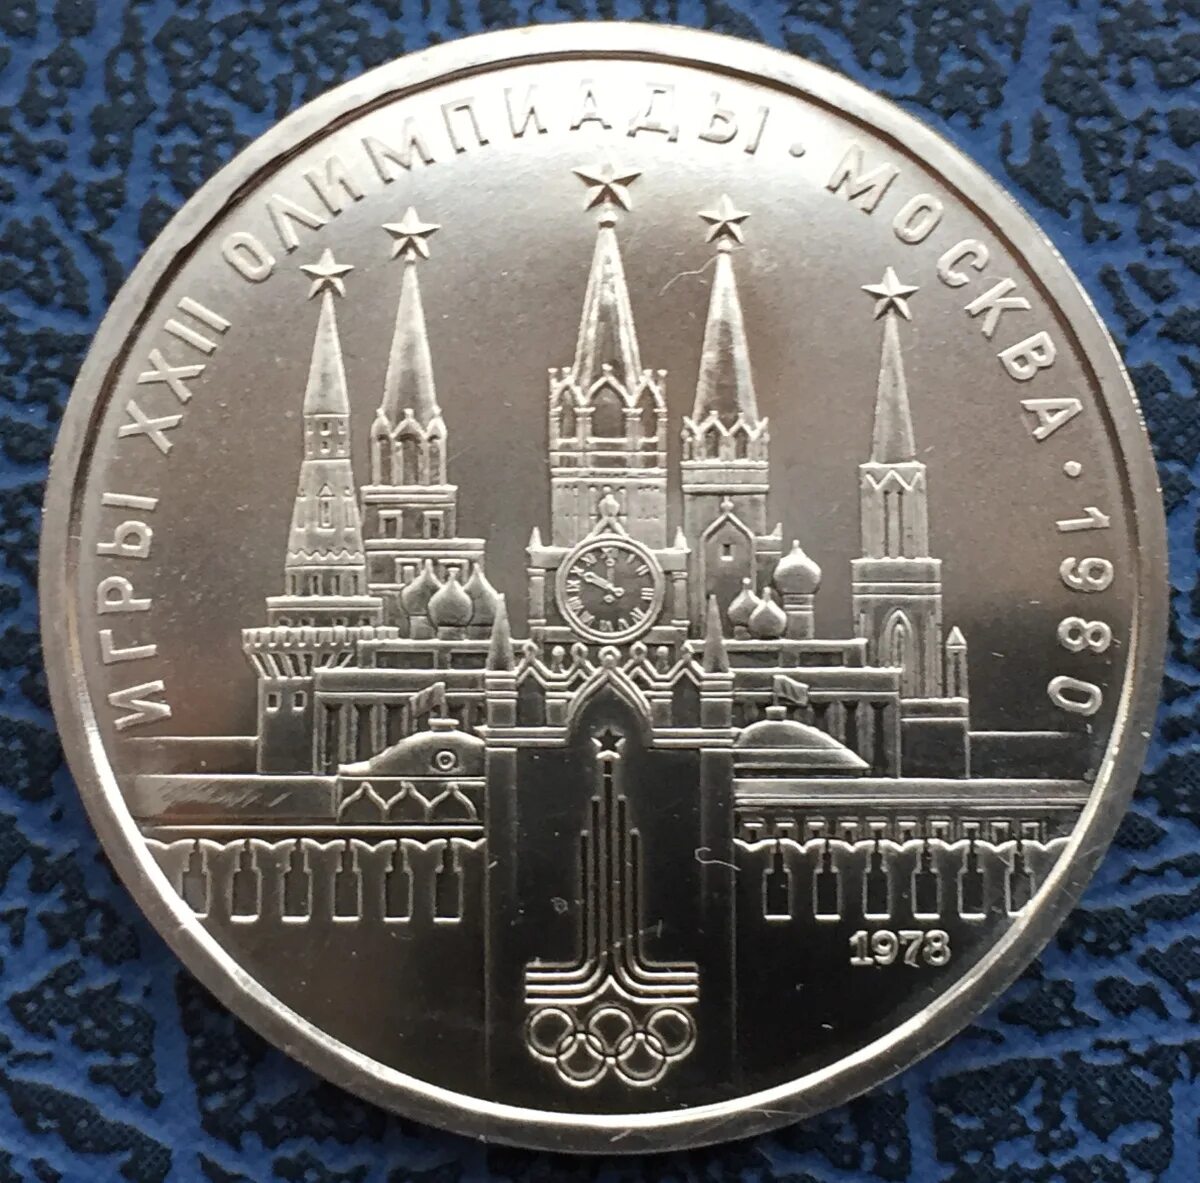 1 рубль в 80 е. Олимпийский рубль 1980. 1 Рубль 1980 «Олимпийский». Монета олимпиады 1980 1 рубль СССР.